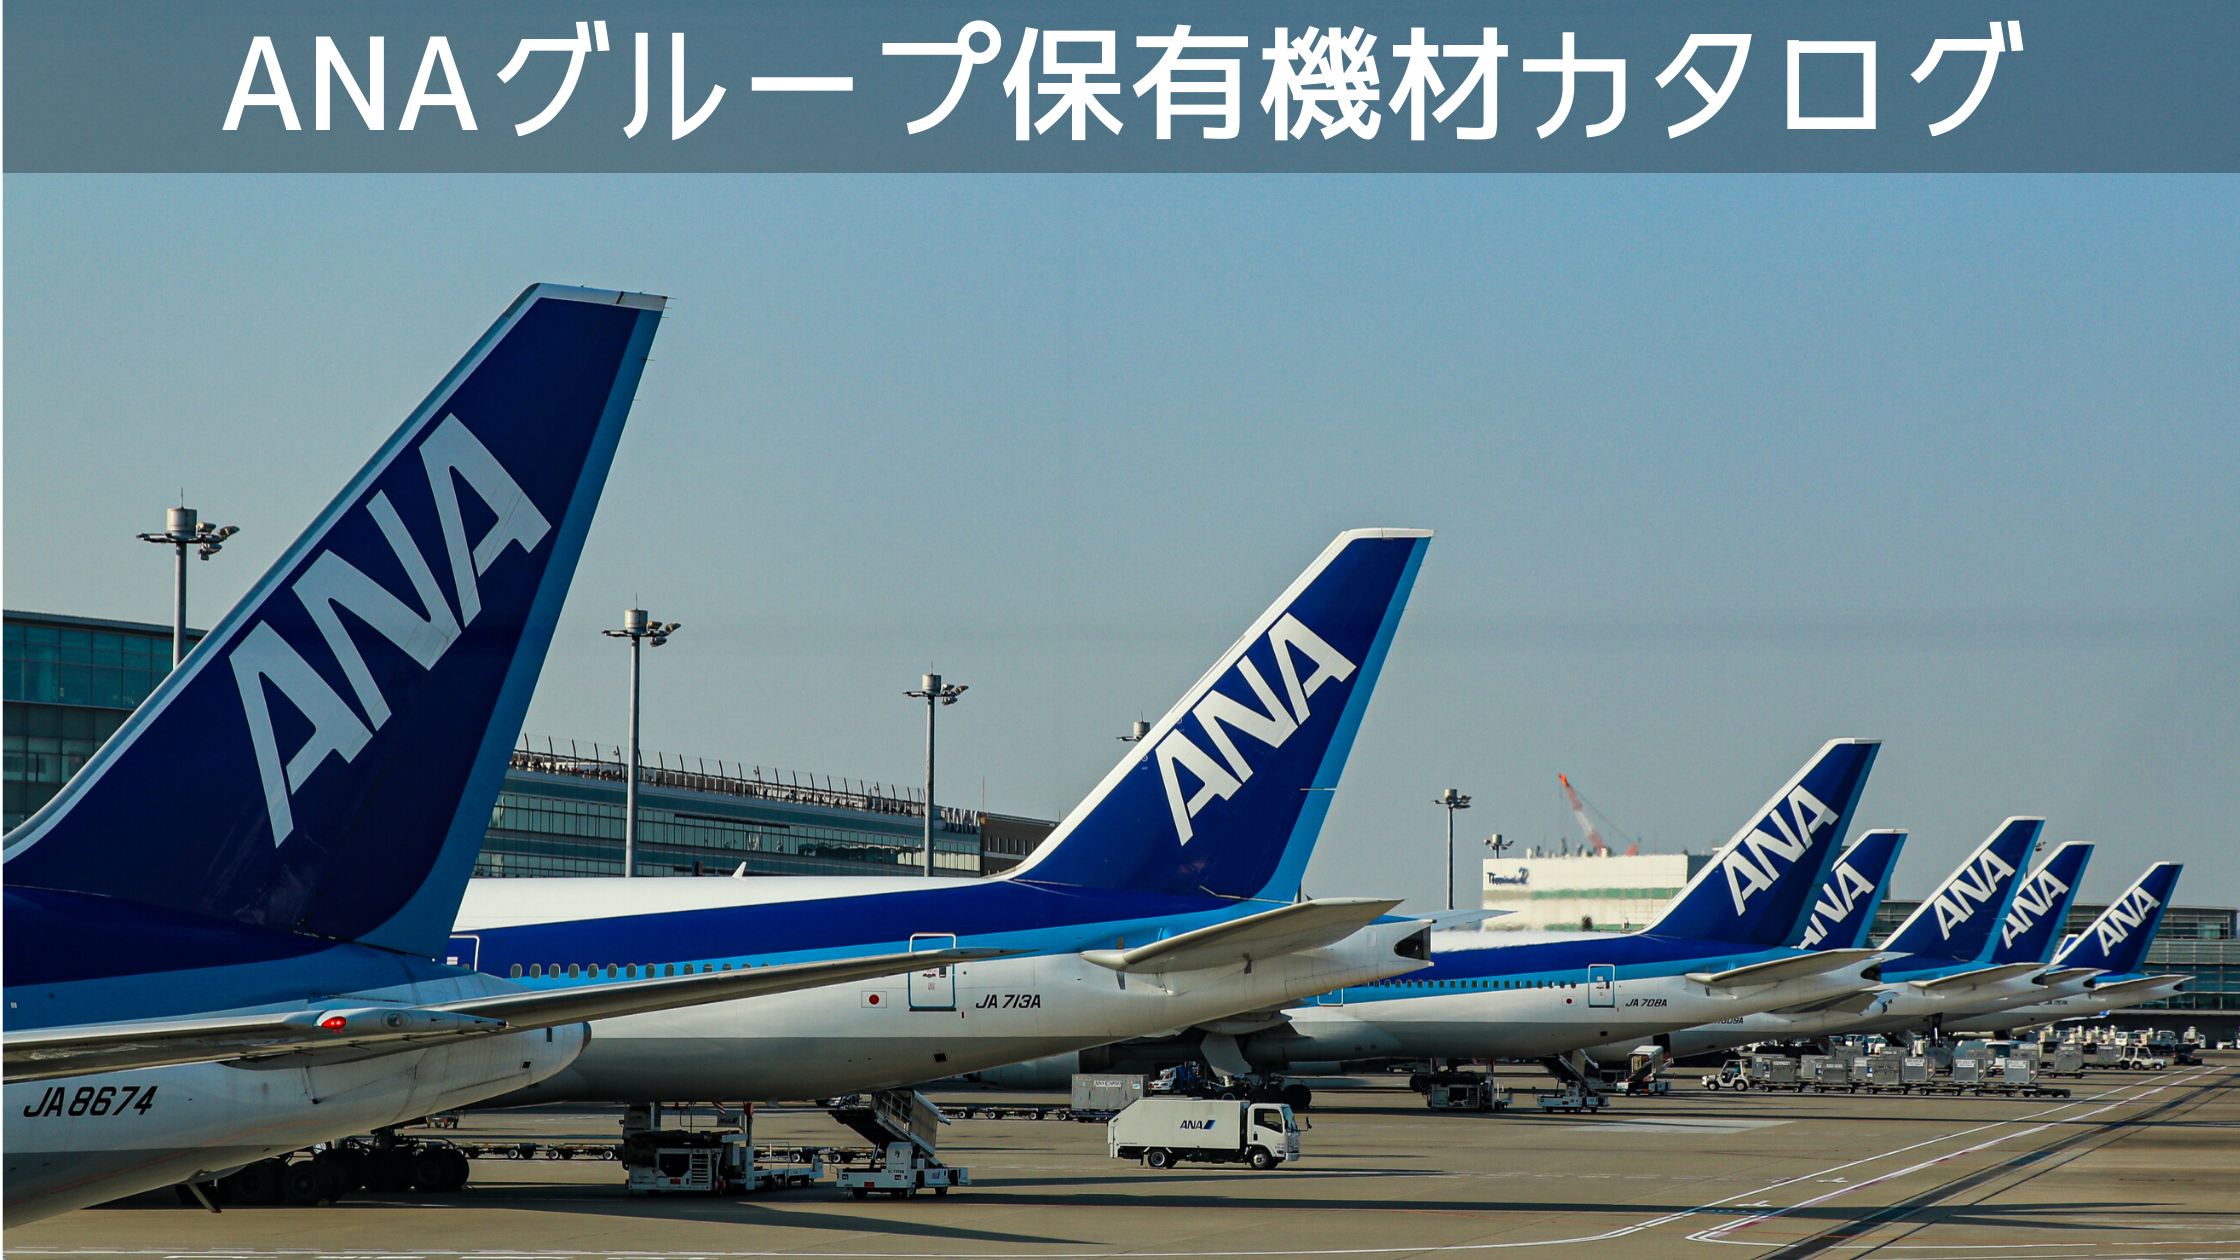 21年10月最新版 全18種類 全日本空輸 Ana グループ保有機材フリートカタログ シテイリョウコウ